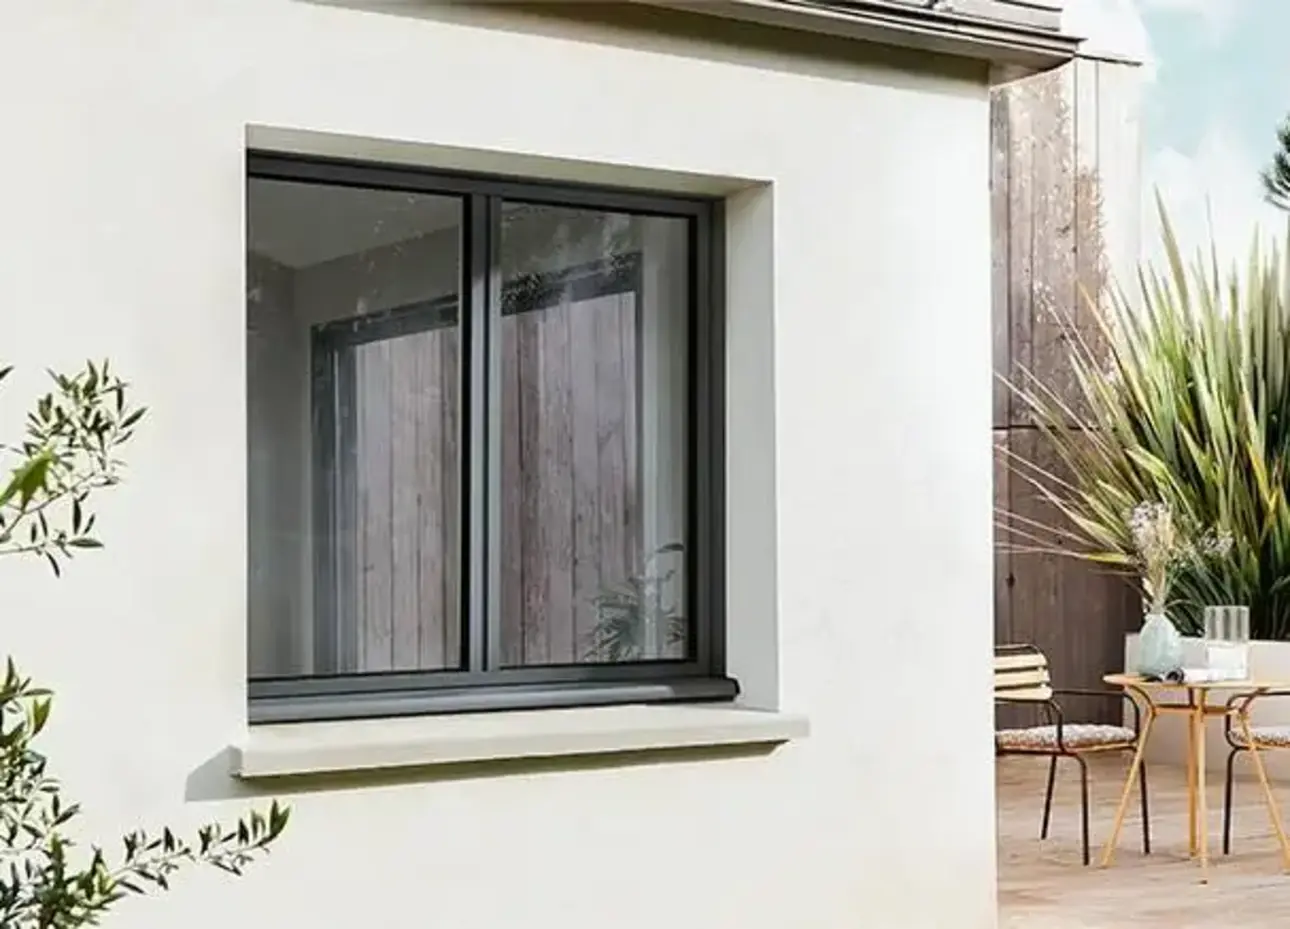 Une surface vitrée optimale grâce à l'ouvrant caché de la fenêtre